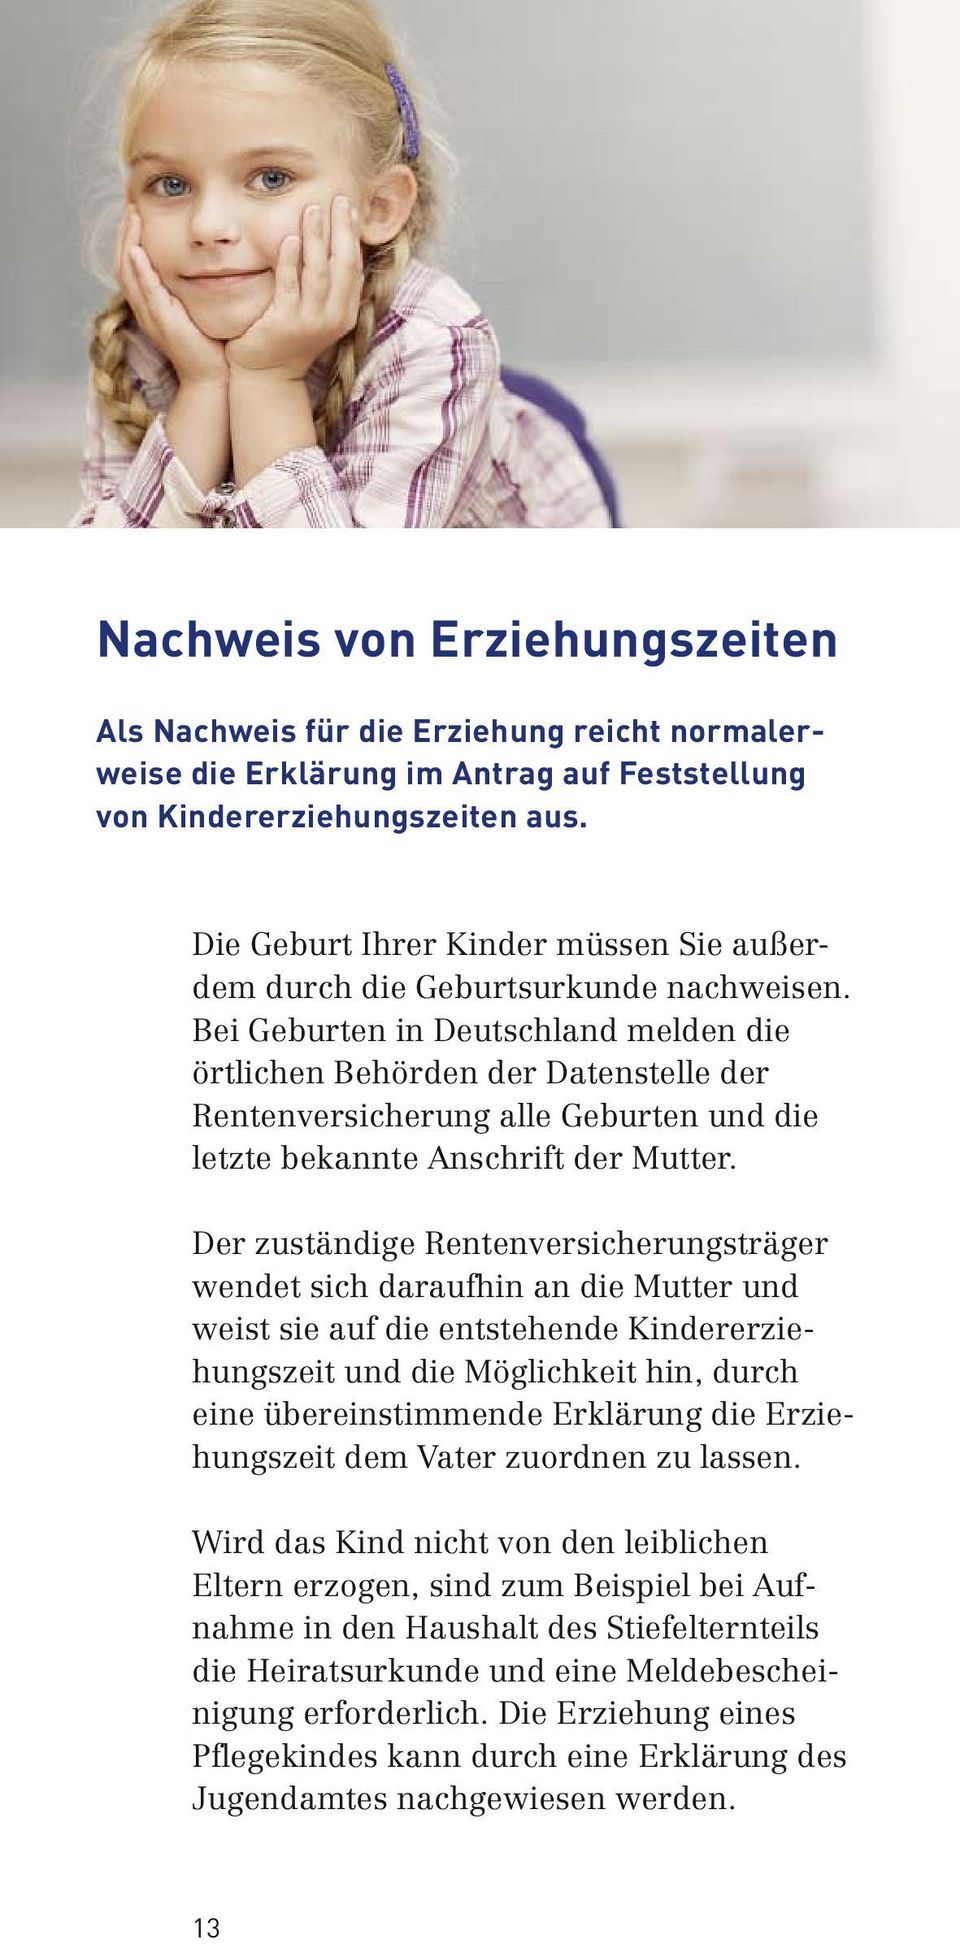 Bei Geburten in Deutschland melden die örtlichen Behörden der Datenstelle der Rentenversicherung alle Geburten und die letzte bekannte Anschrift der Mutter.